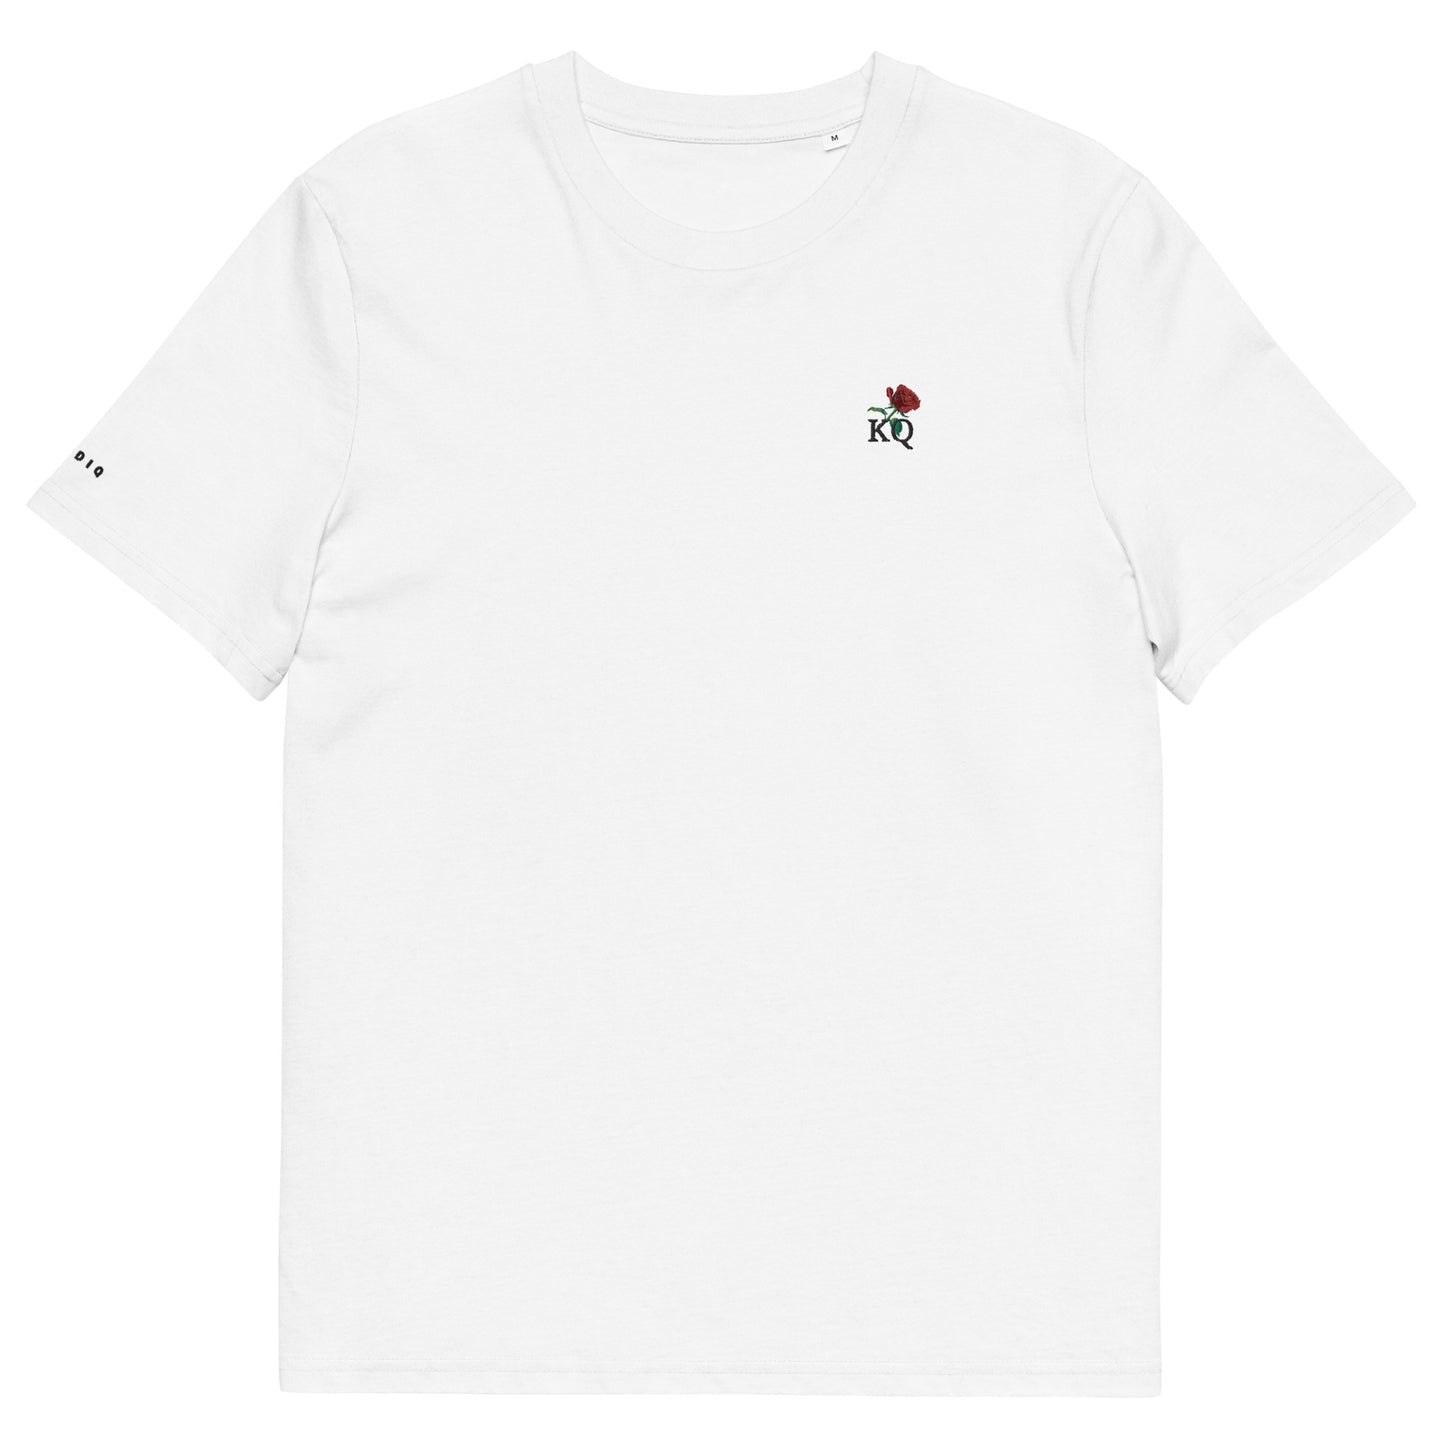 Klediq T-shirt / White